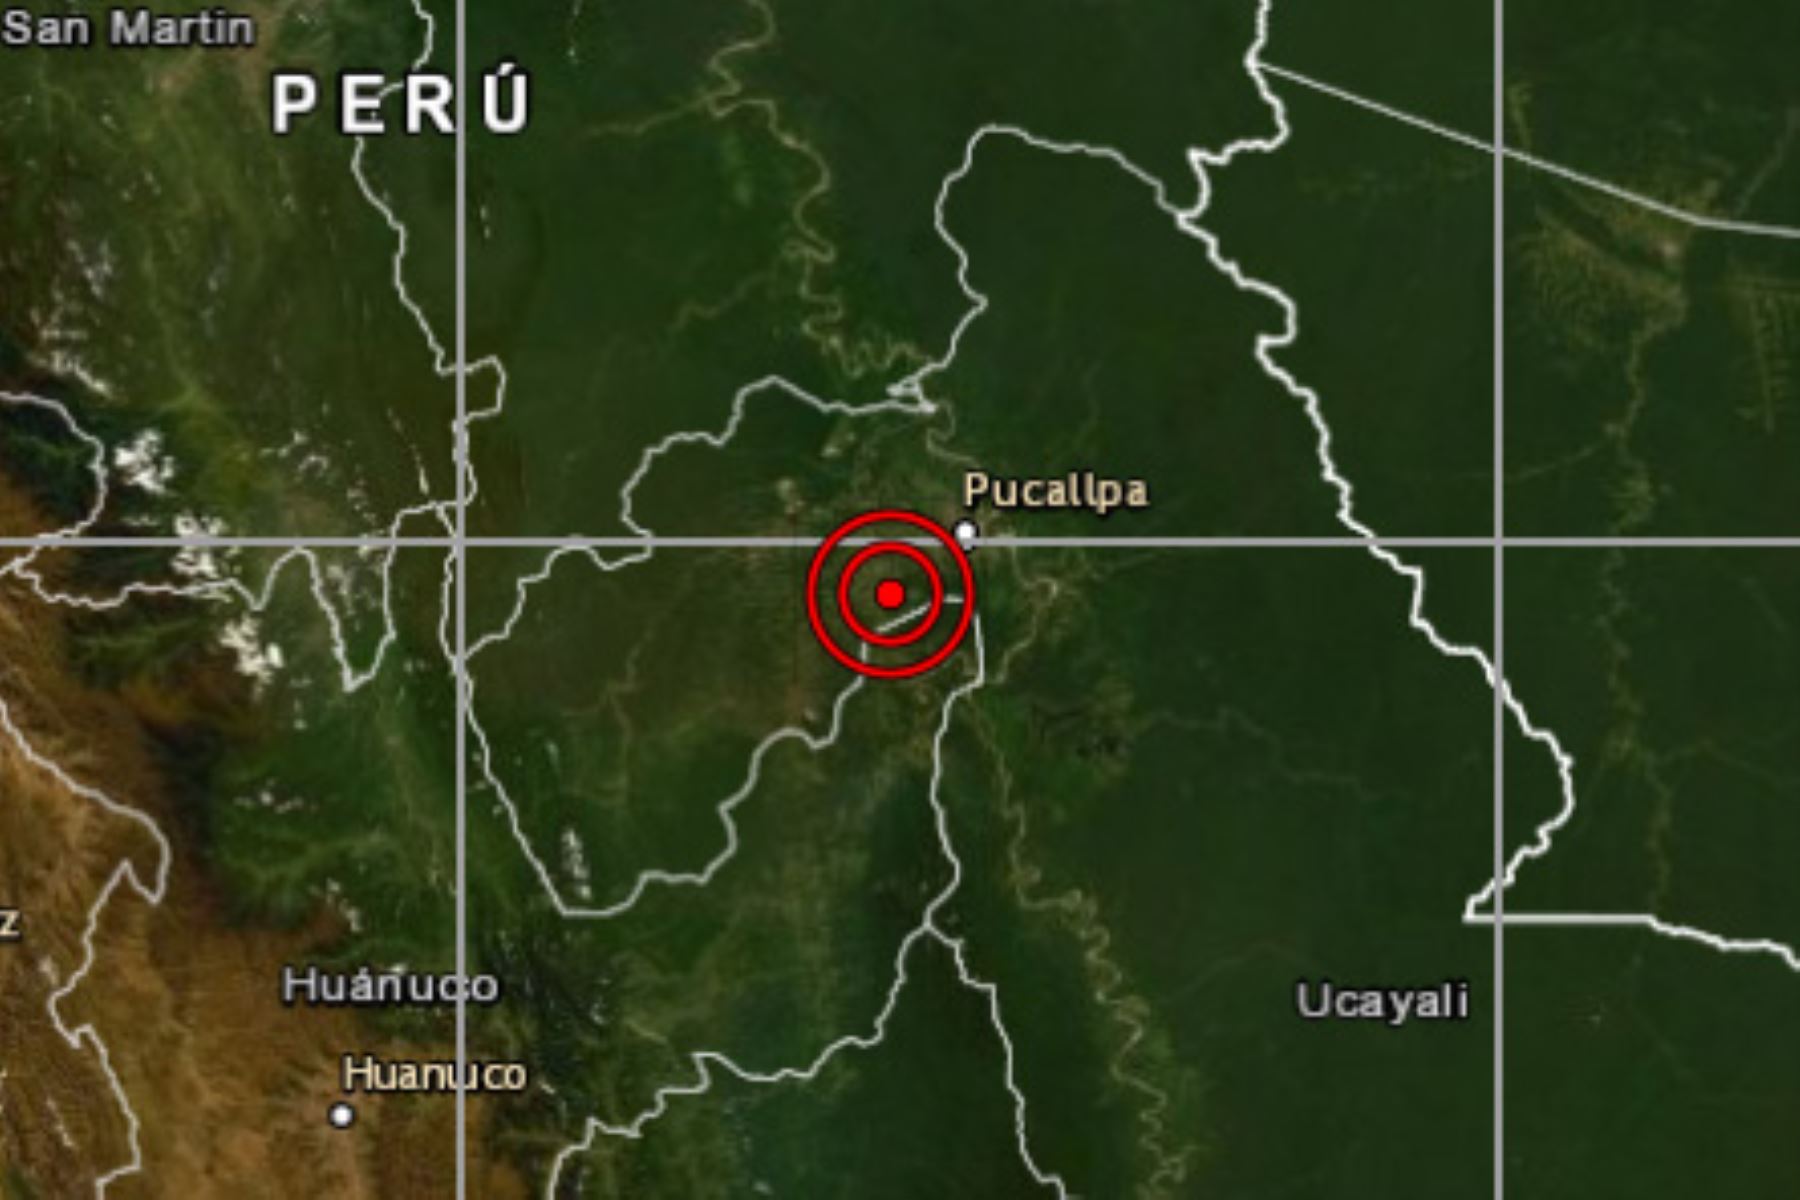 Un movimiento sísmico de magnitud 5.2 remeció esta tarde la provincia de Coronel Portillo, región Ucayali, reportó el IGP.